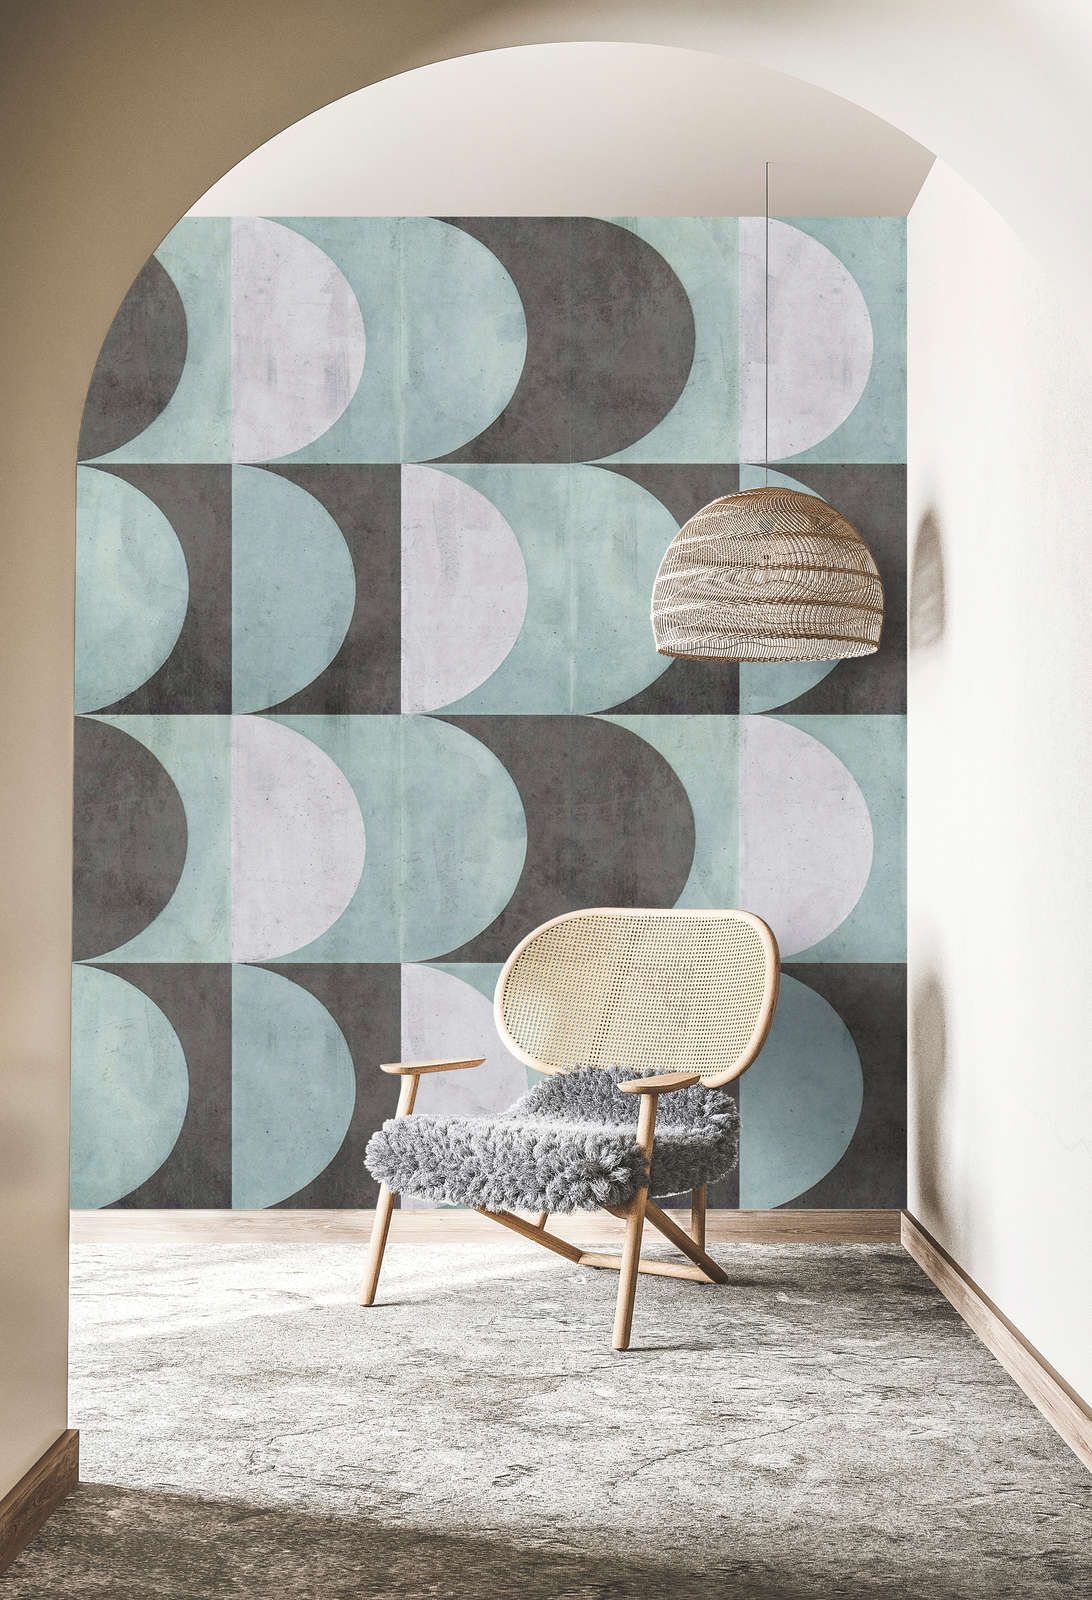             Digital behang »julek 2« - retro patroon in betonlook - mintgroen, grijs | mat, glad vlies
        